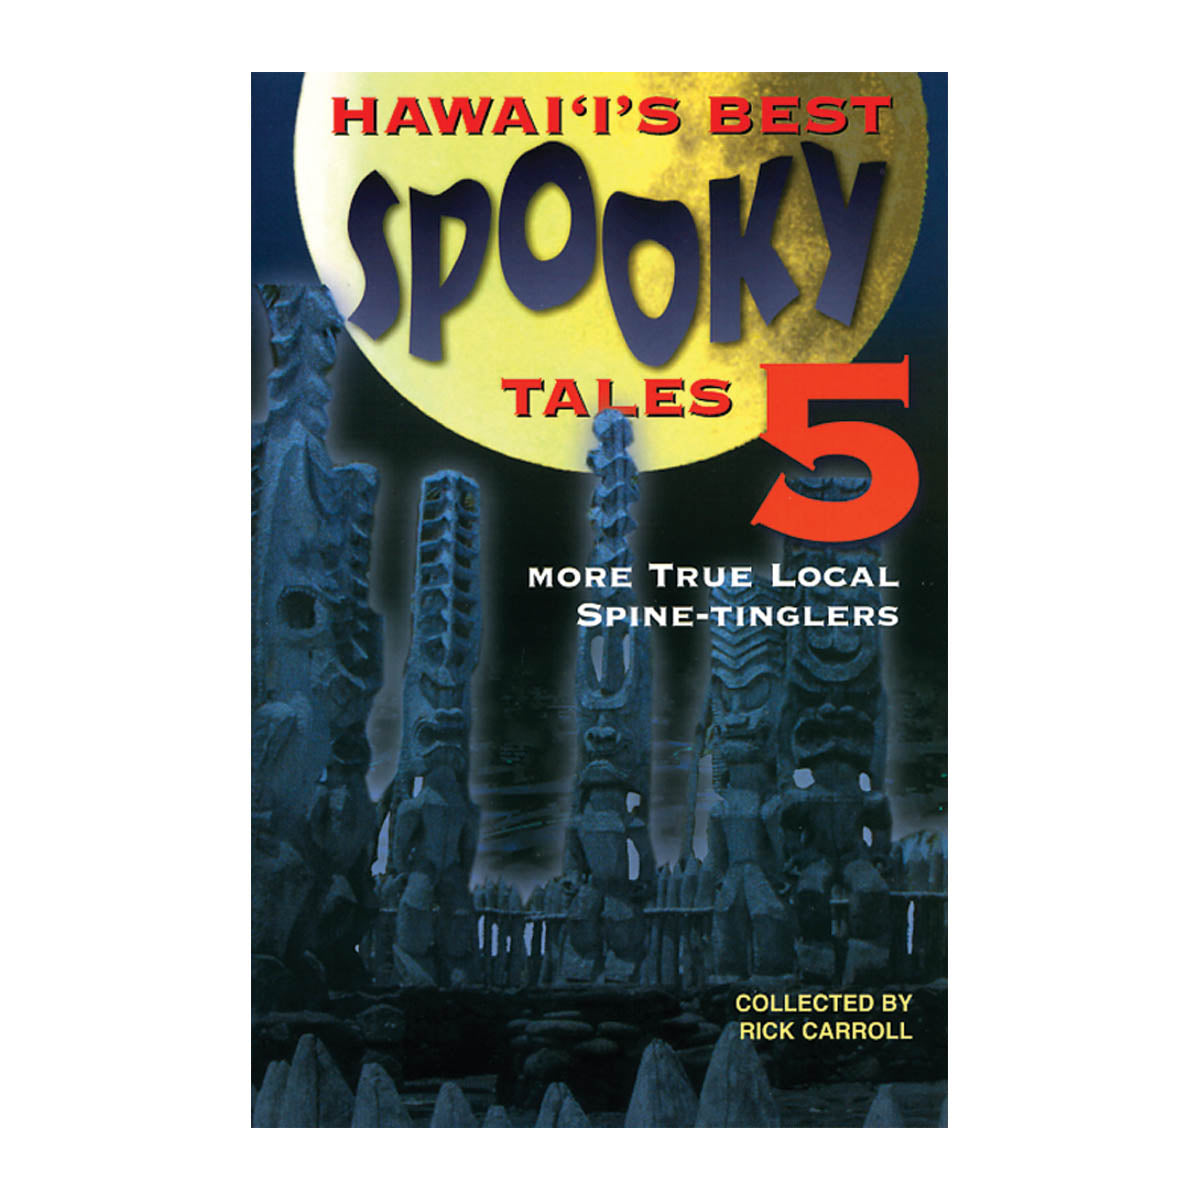 Hawai‘i’s Best Spooky Tales 5